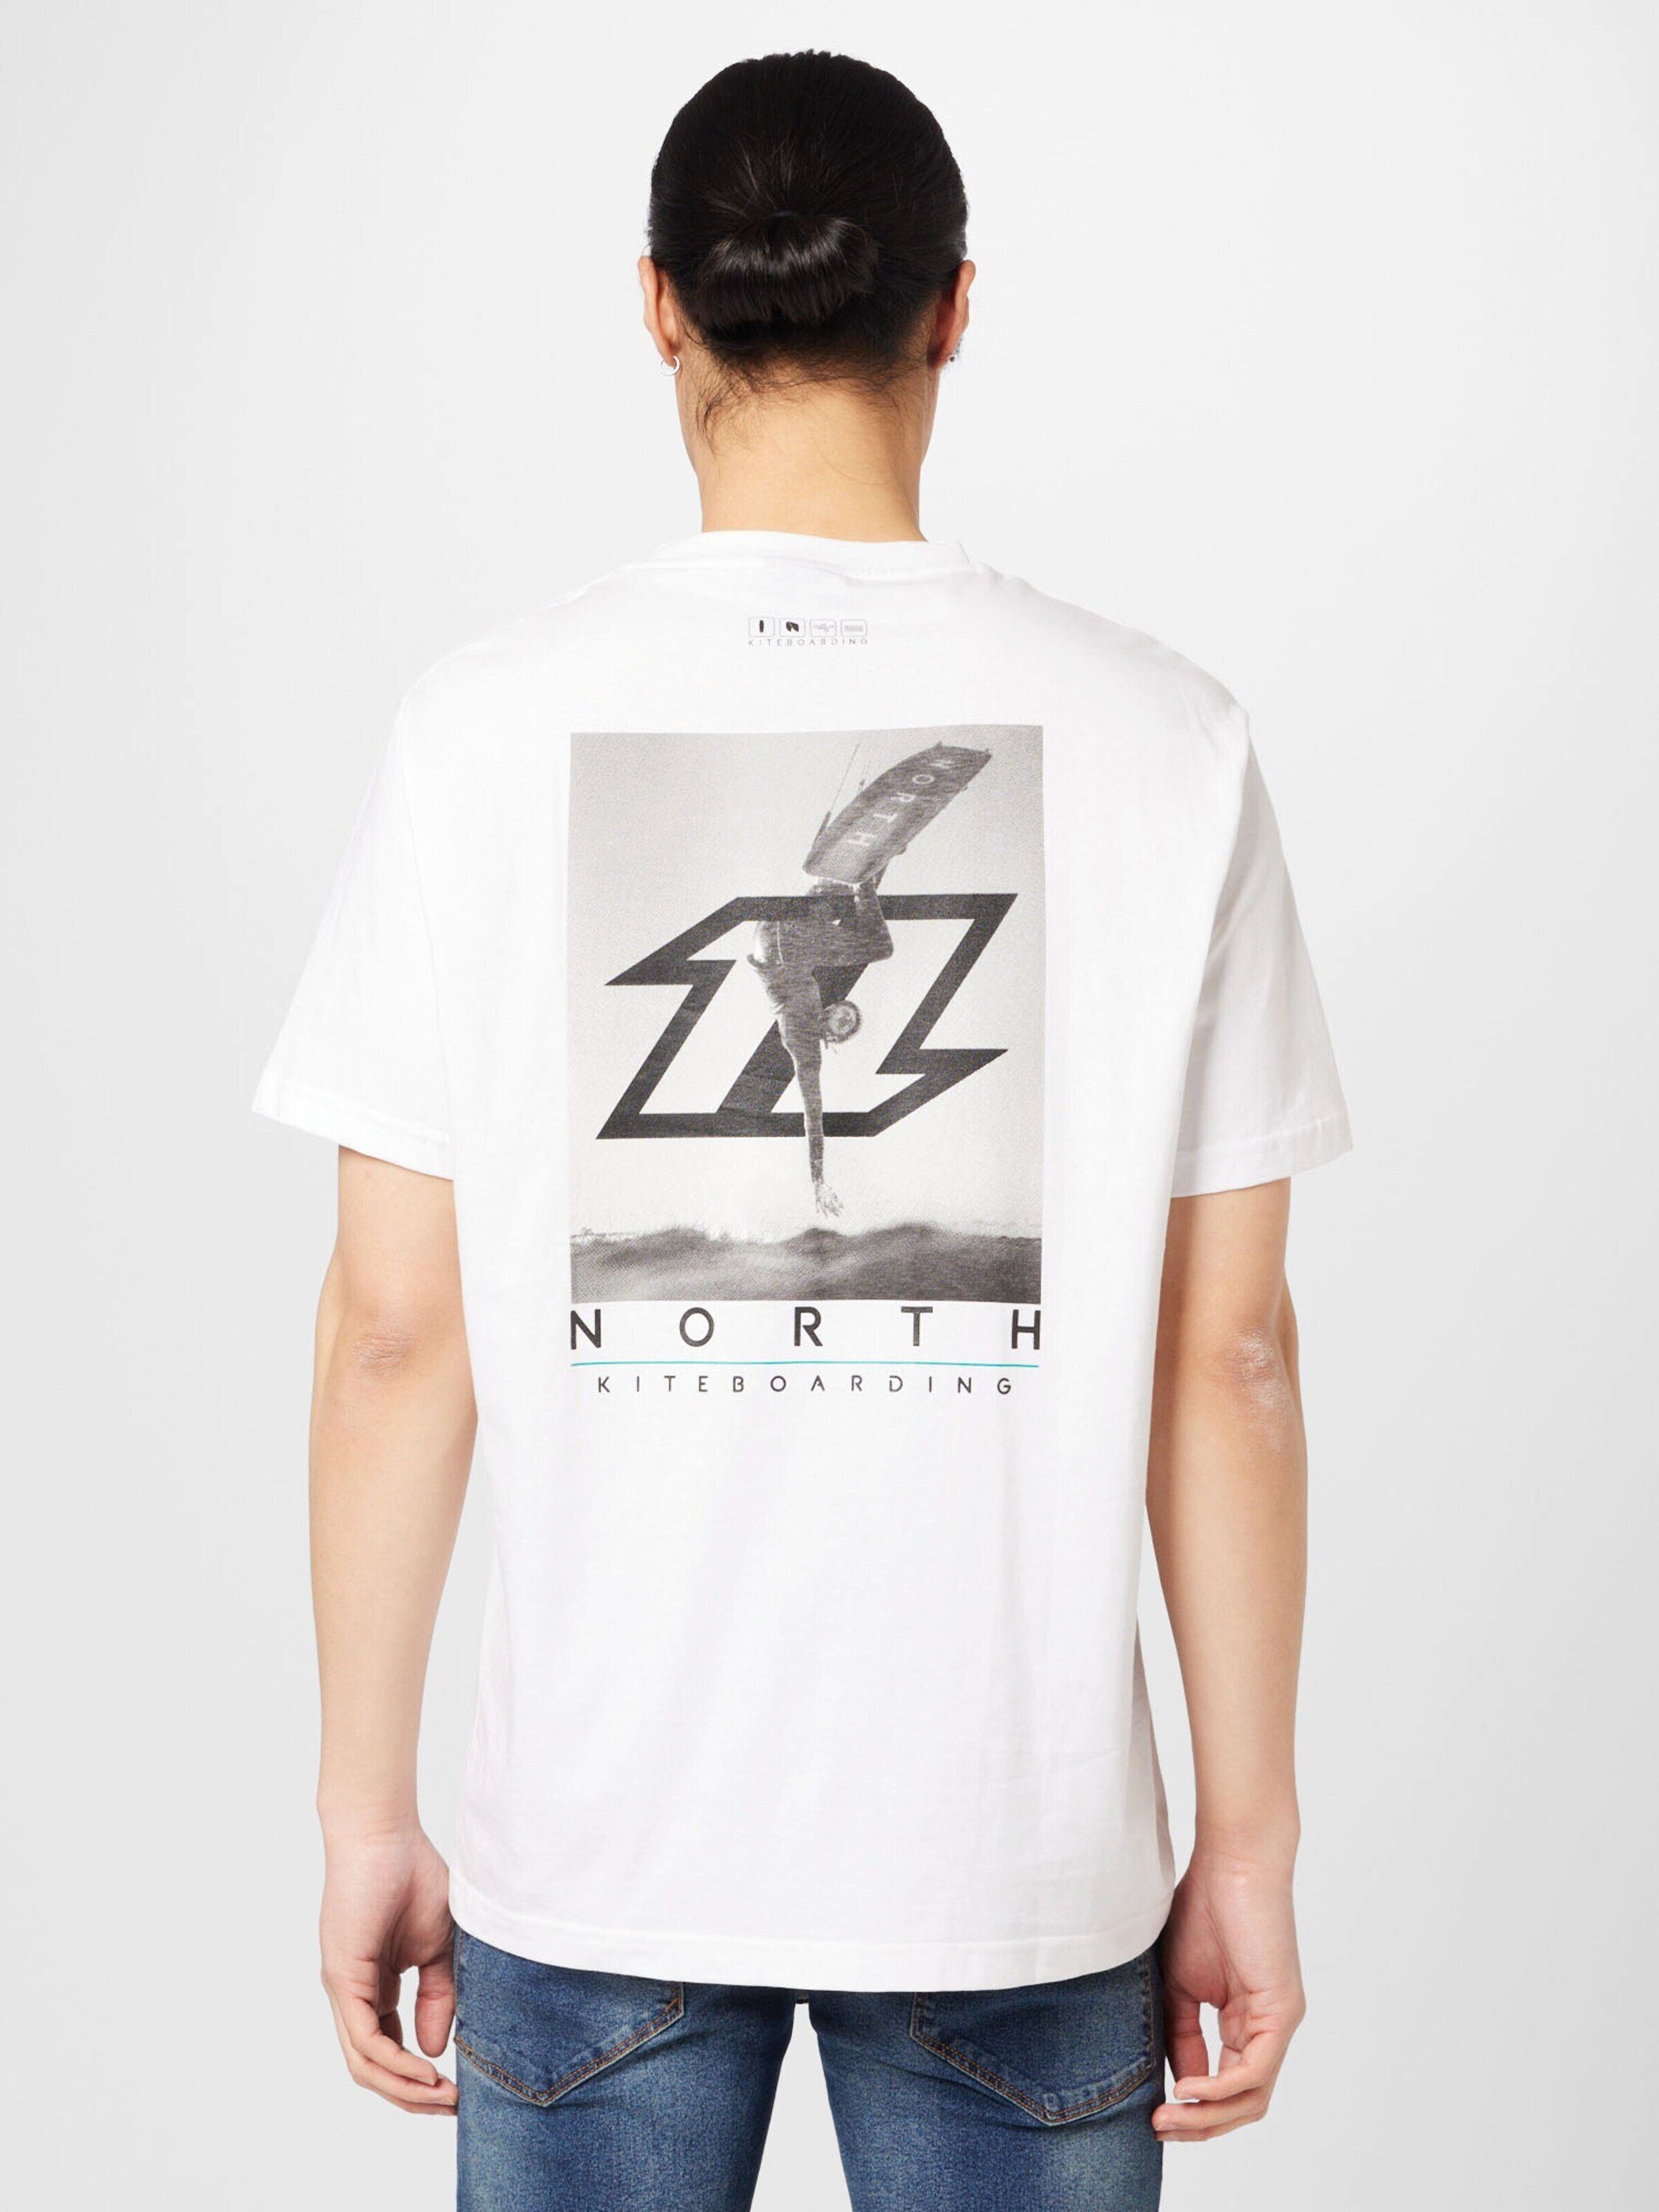 North Sails T-Shirt (1-tlg)